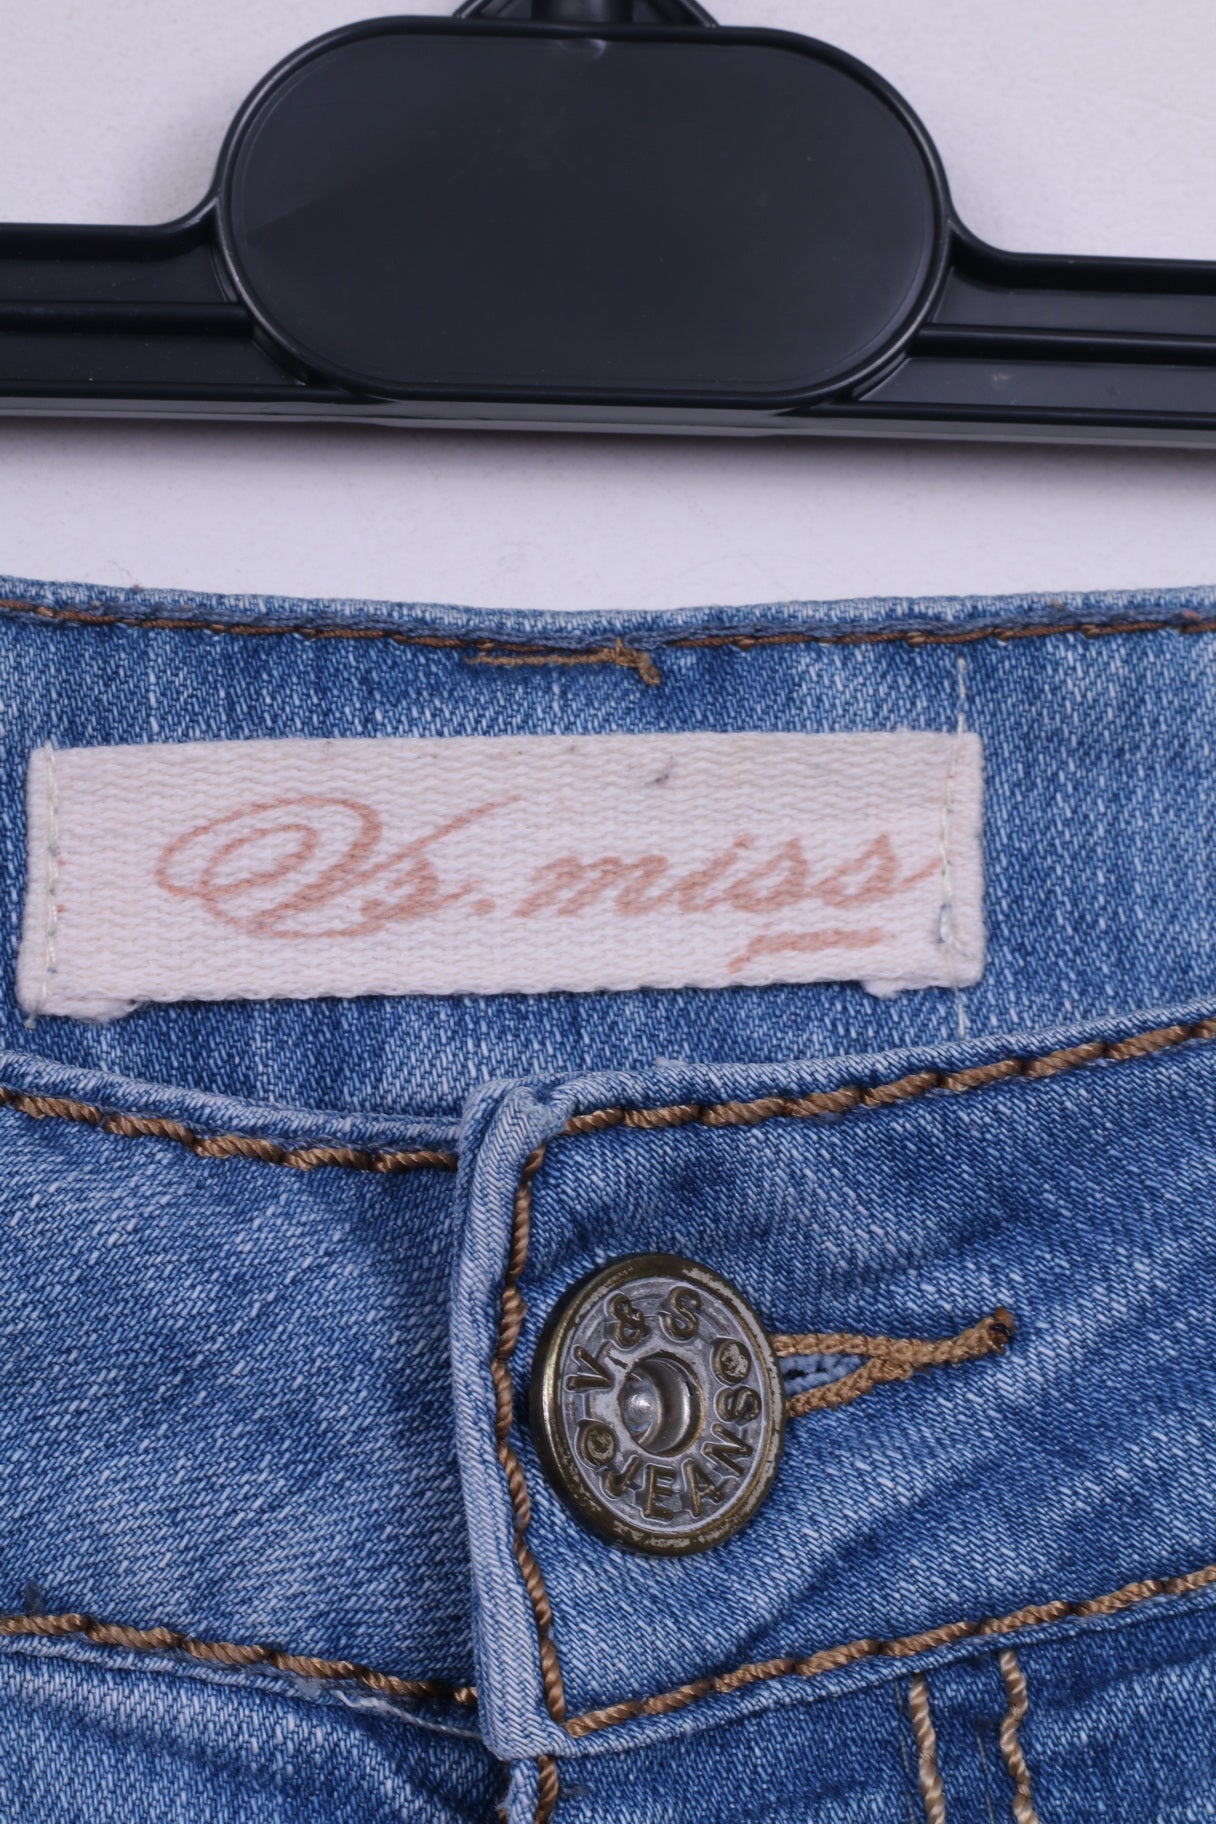 VS.Miss Womens 14 Trousers Denim Jeans Light Blue Cotton